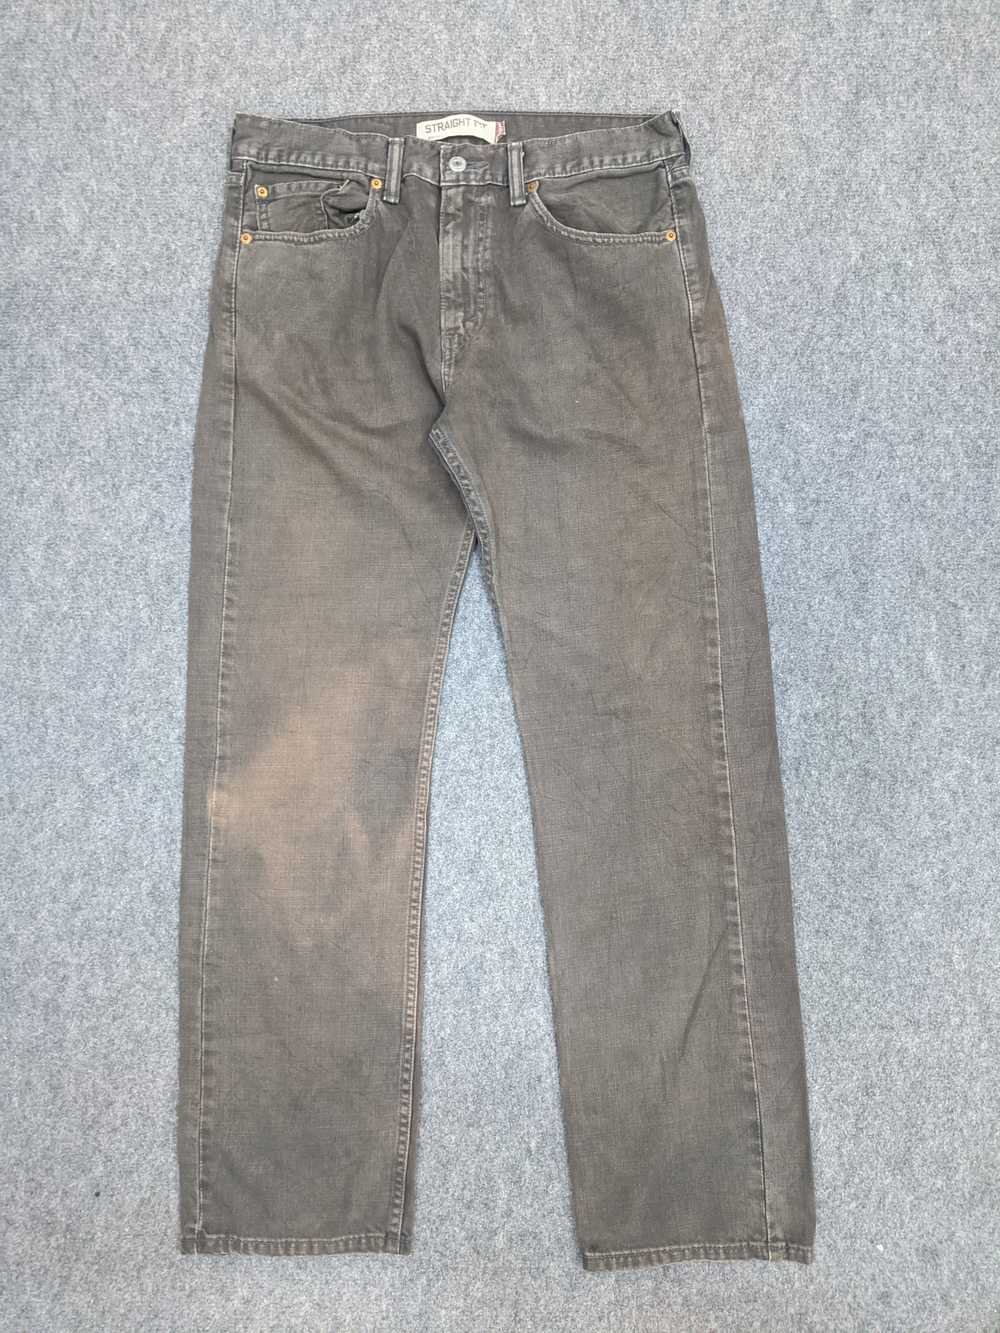 Vintage - Vintage Levis 505 Light Wash Jeans - image 1